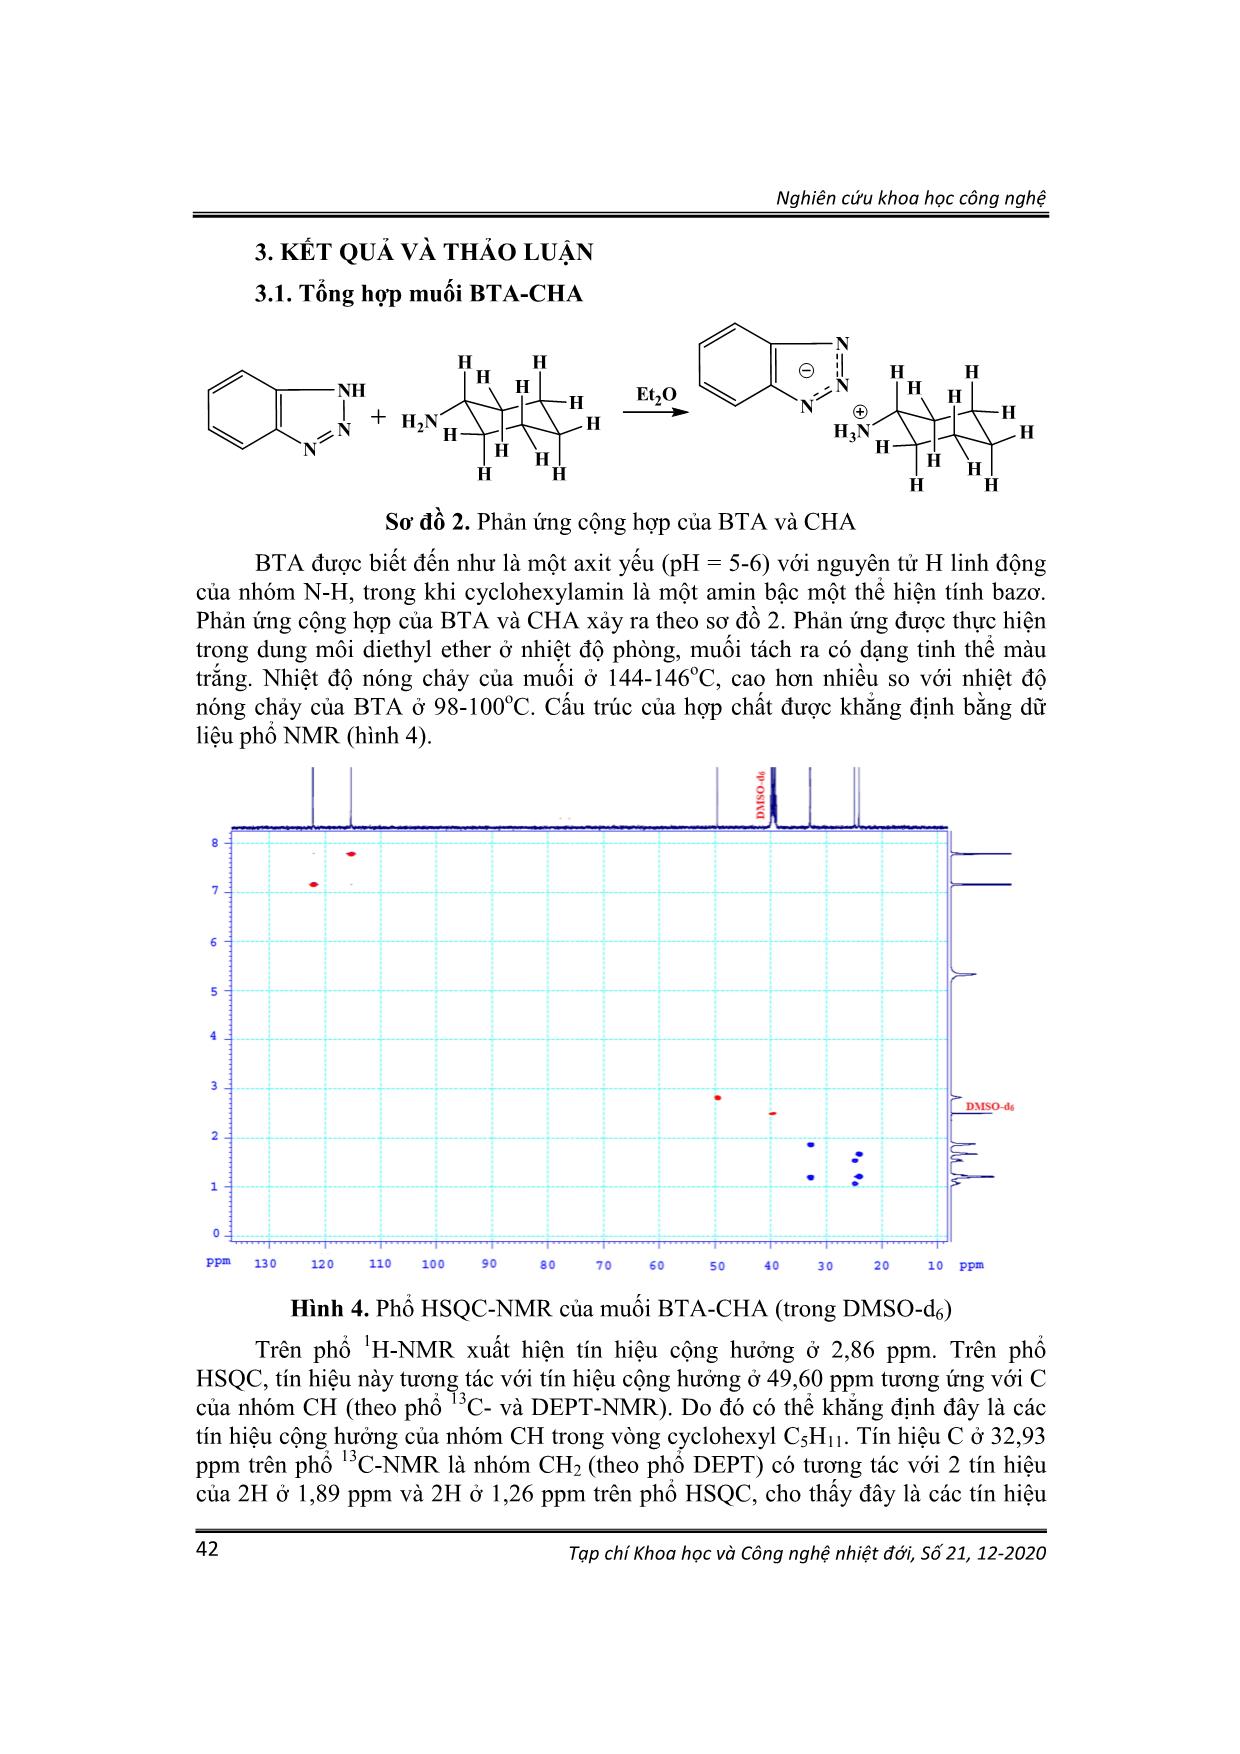 Tổng hợp và hiệu quả ức chế ăn mòn đồng của muối cộng hợp Benzotriazole-Cyclohexylamine trong dung dịch NaCl trang 5